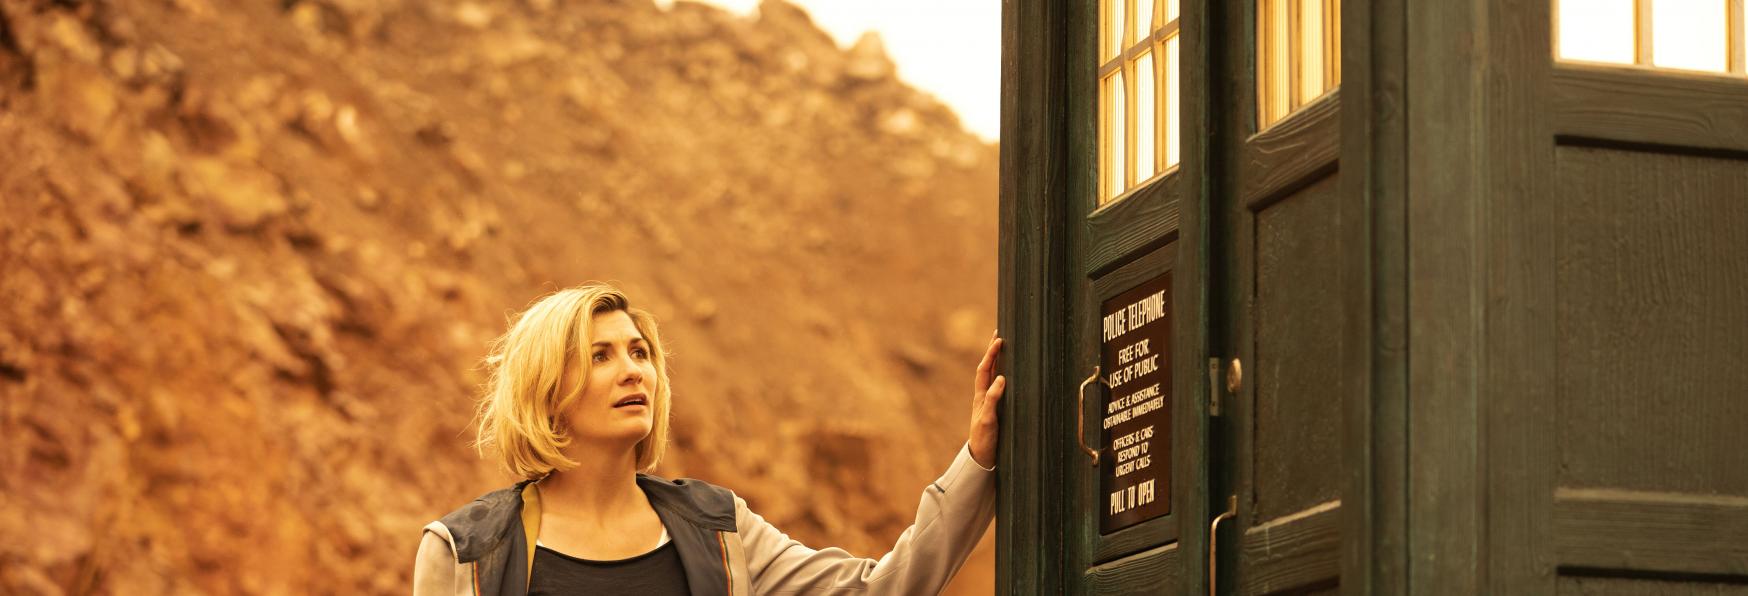 Doctor Who sarà disponibile su Disney+ fuori dal Regno Unito? In corso le Trattative